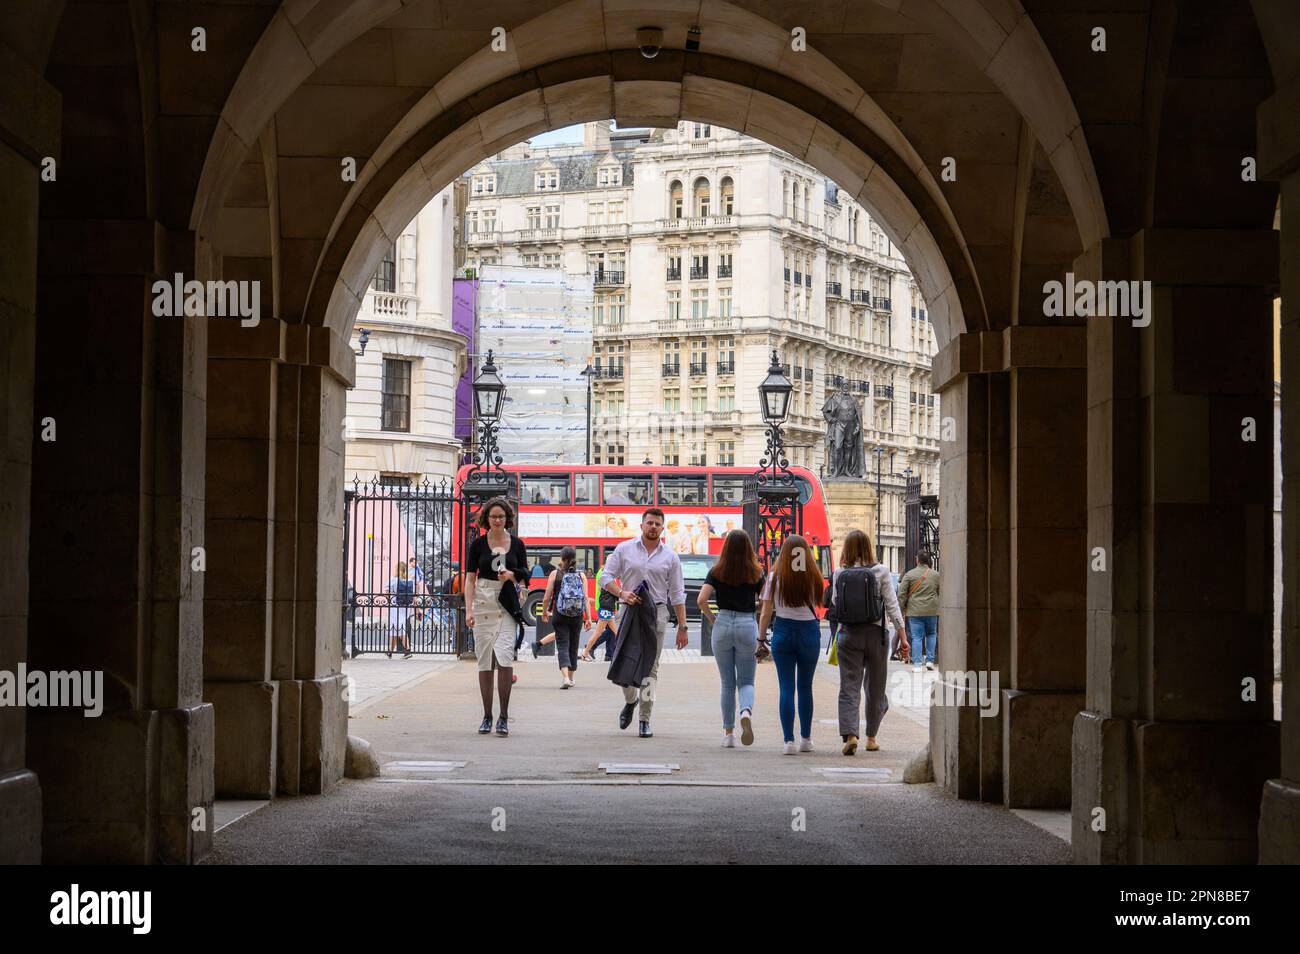 LONDON - 18. Mai 2022: Eine geschäftige Londoner Szene, während die Menschen durch den Eingangsbogen zur Horse Guards Parade gehen, mit dem berühmten roten Doppeldeckerbus in t Stockfoto